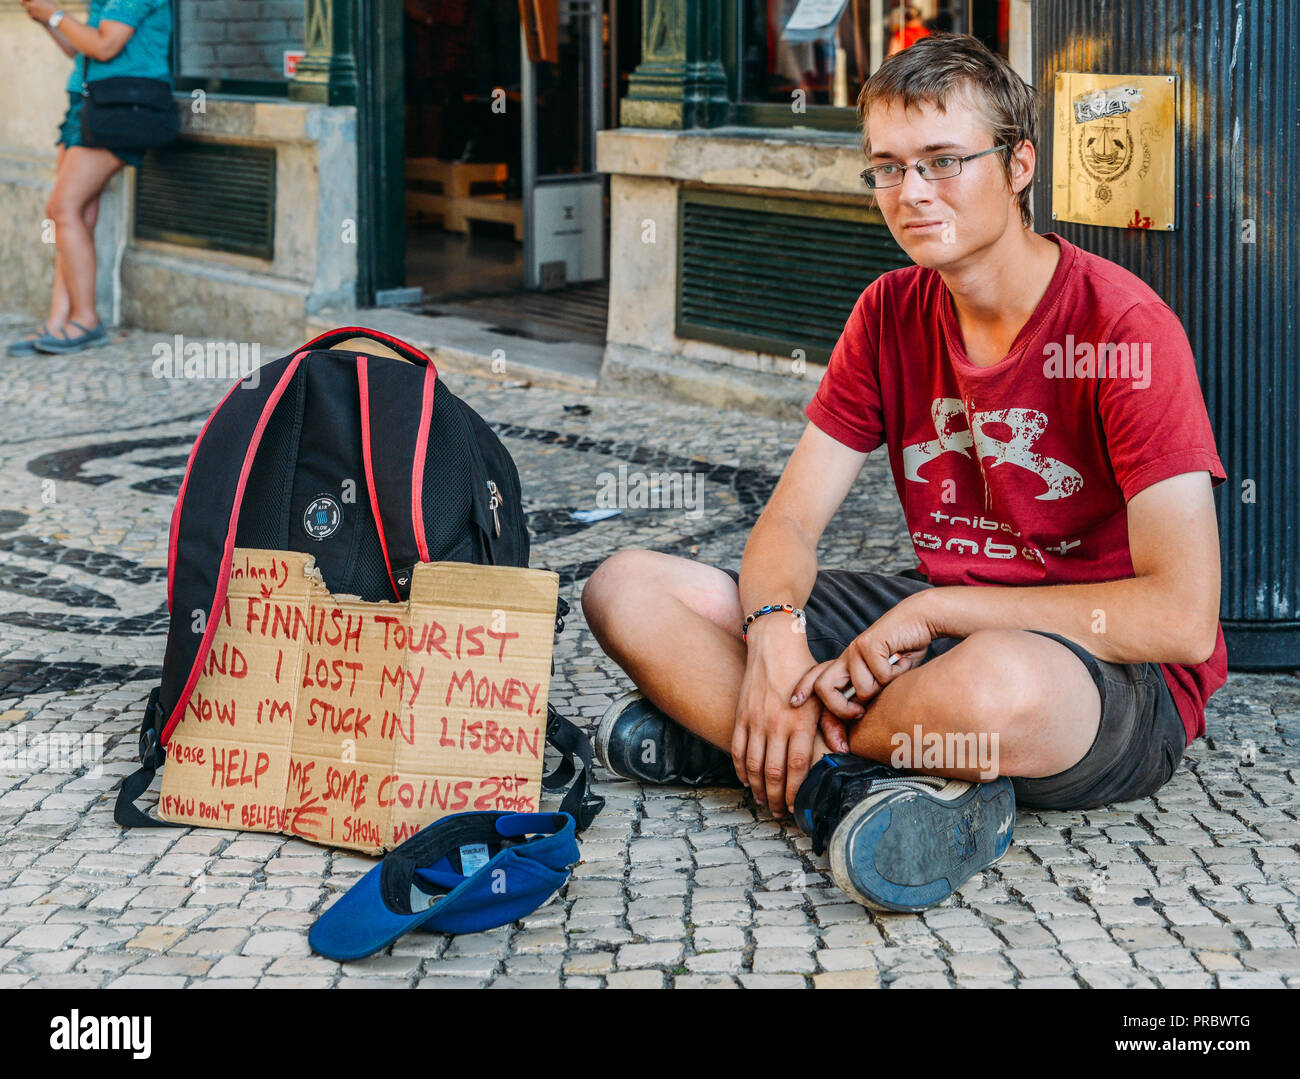 Il finlandese turistico con sob storia scritta sul segno di cartone su nessun denaro, etc mendica per soldi per tornare a casa, Lisbona, Portogallo. Foto Stock